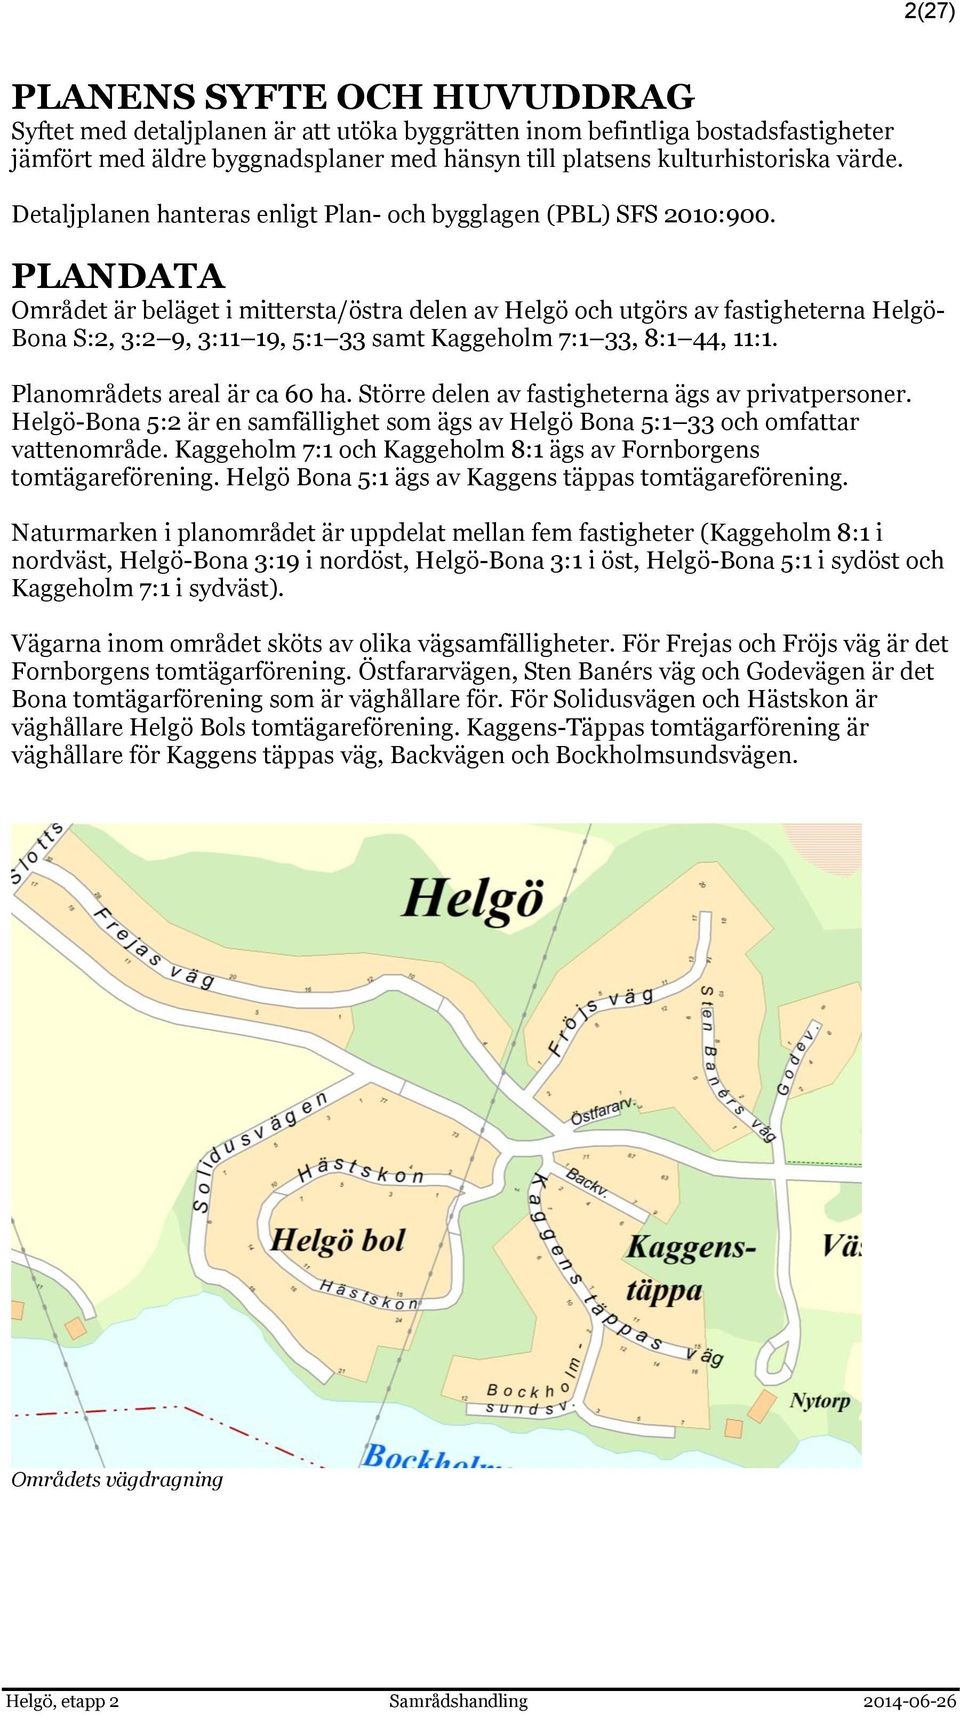 PLANDATA Området är beläget i mittersta/östra delen av Helgö och utgörs av fastigheterna Helgö- Bona S:2, 3:2 9, 3:11 19, 5:1 33 samt Kaggeholm 7:1 33, 8:1 44, 11:1. Planområdets areal är ca 60 ha.